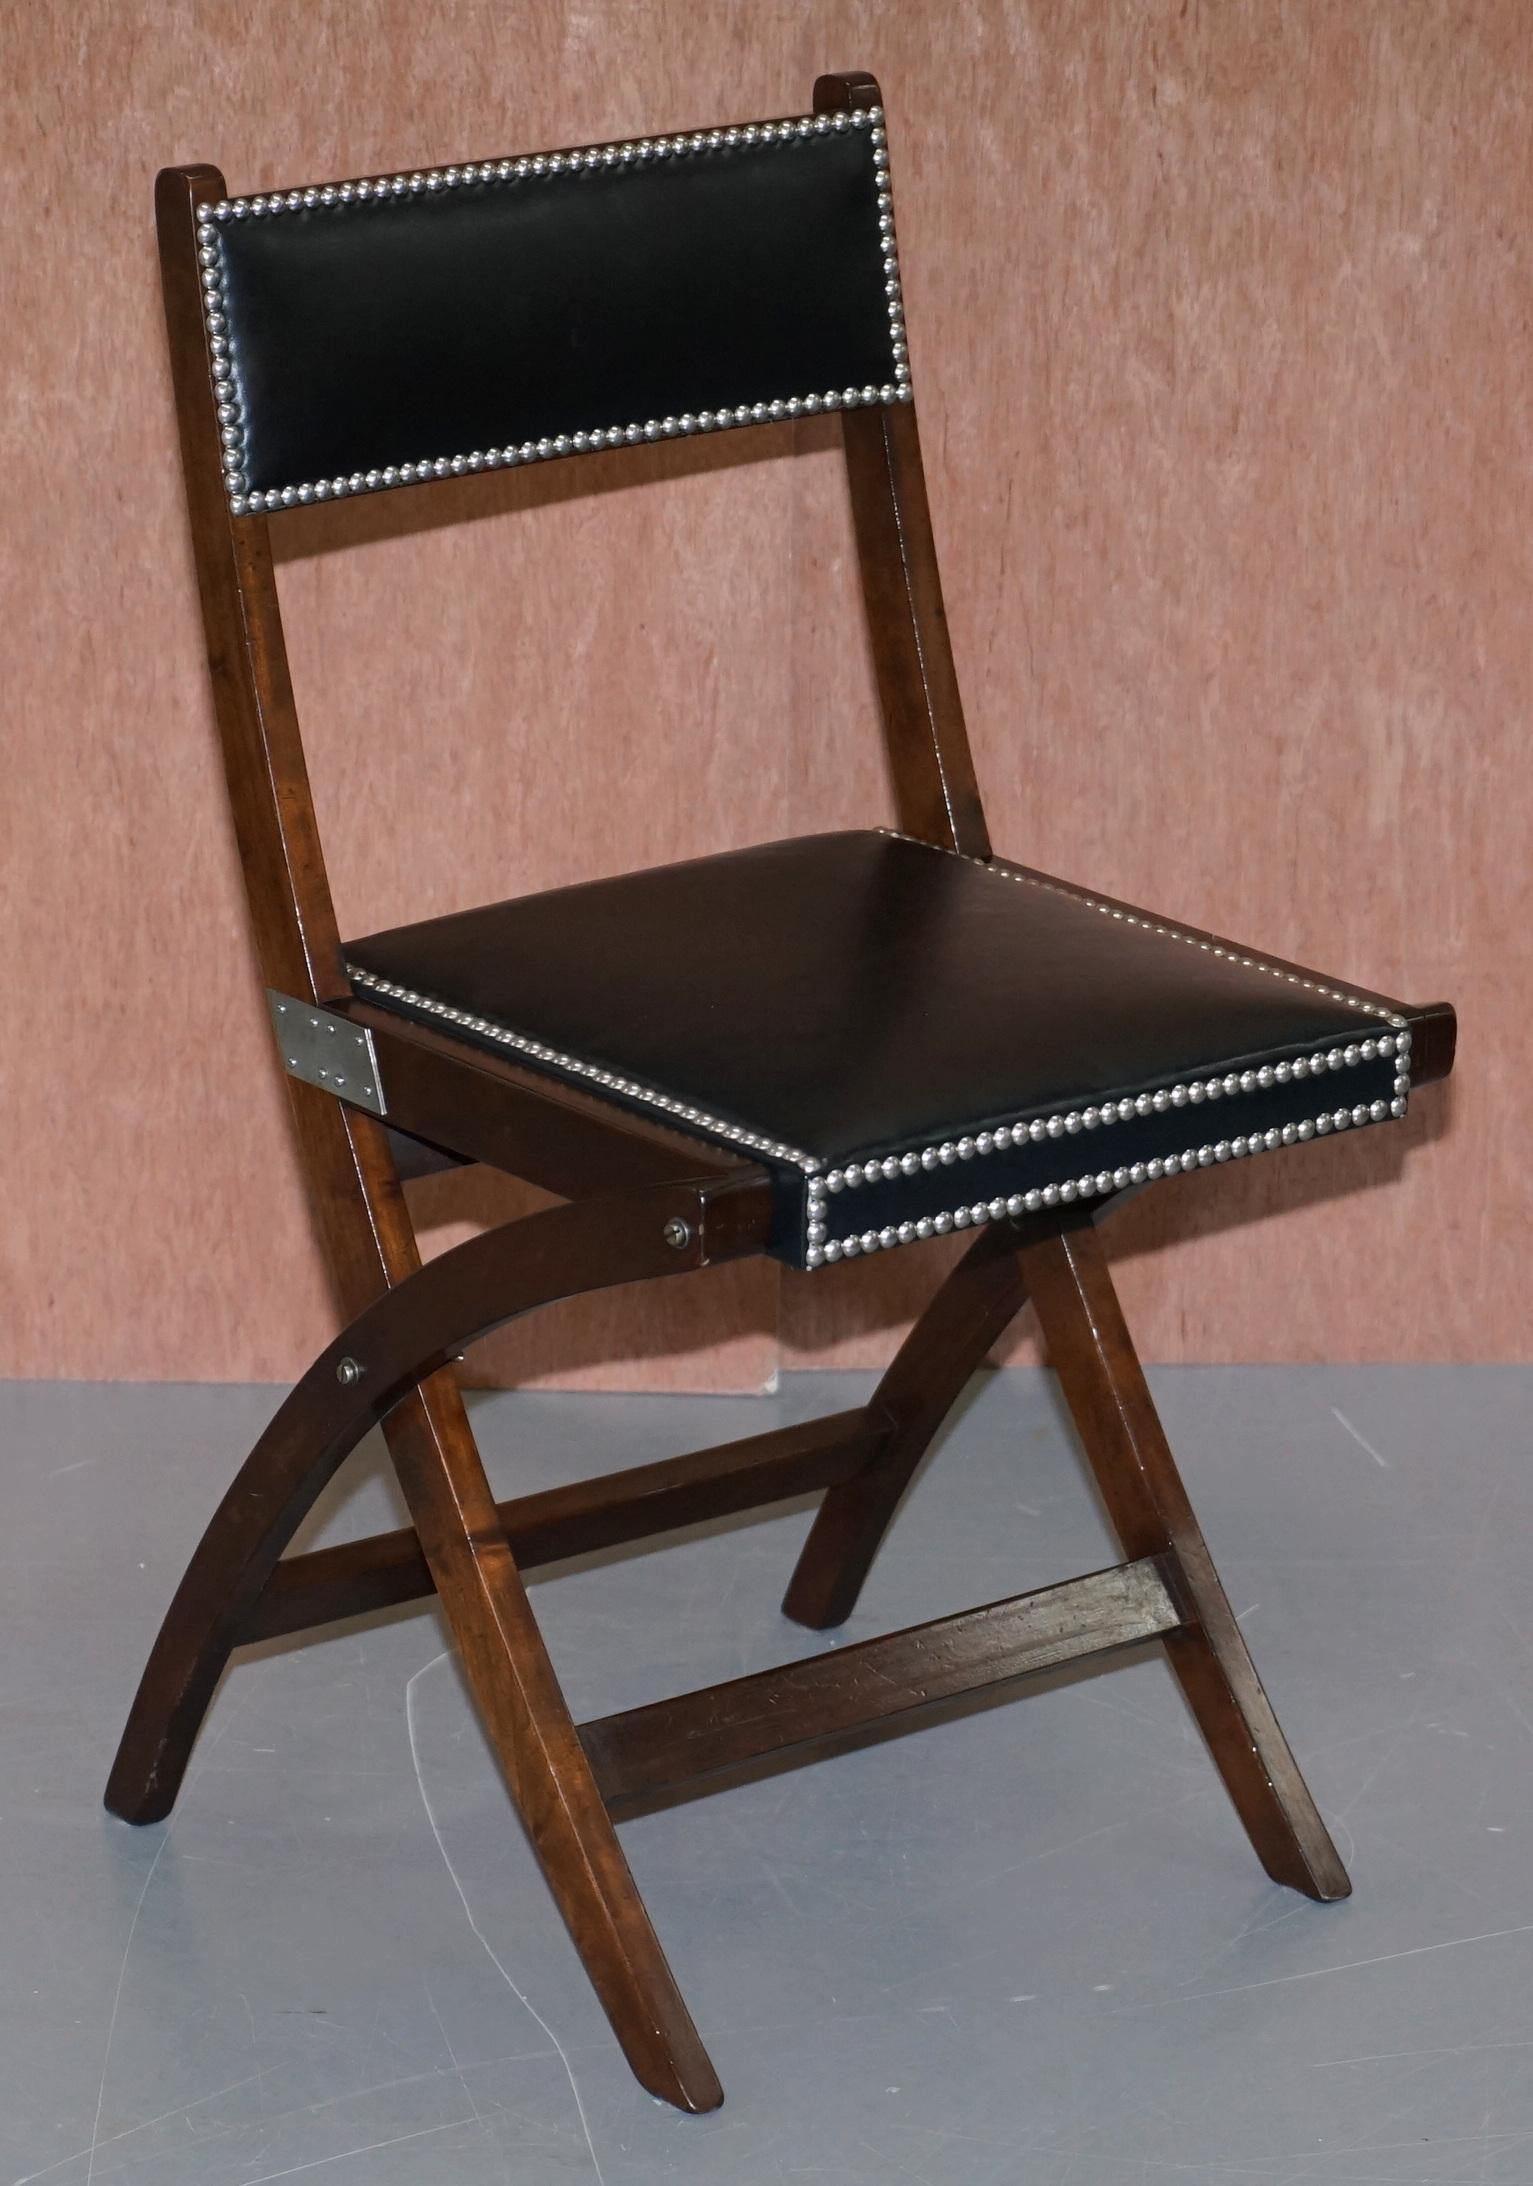 Nous sommes ravis d'offrir à la vente ce magnifique ensemble de chaises de salle à manger / de bureau Kennedy Military Campaigner en parfait état, recouvertes de cuir noir, vendues par Harrods à Londres. Prix de vente conseillé : 5400 £.

Cette